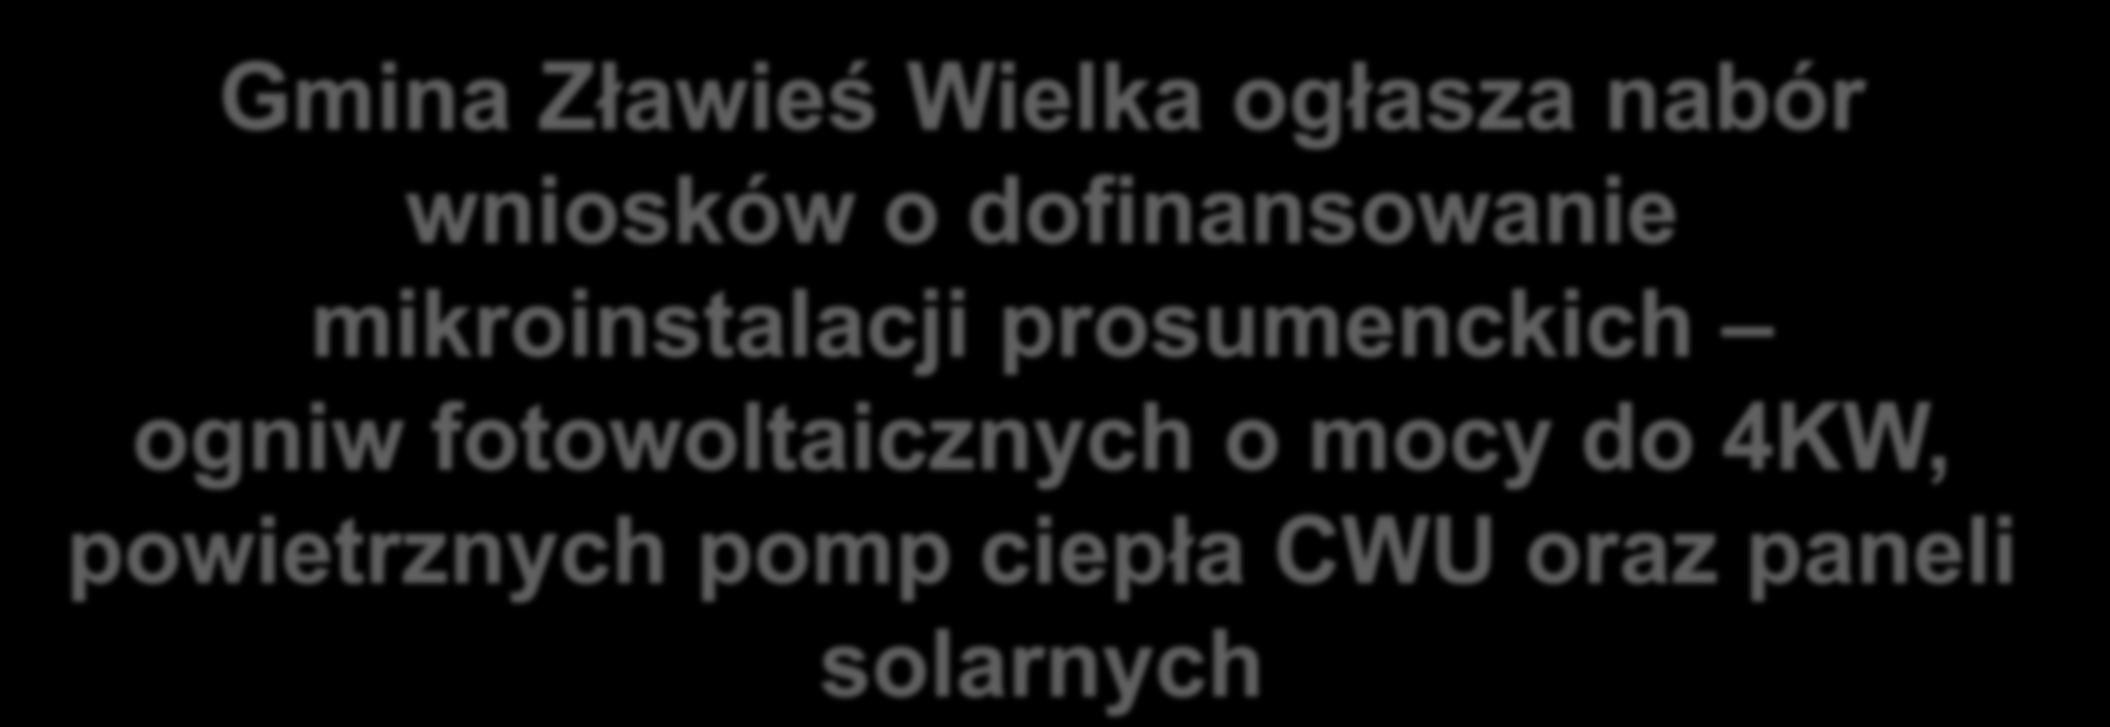 Gmina Zławieś Wielka ogłasza nabór wniosków o dofinansowanie mikroinstalacji prosumenckich ogniw fotowoltaicznych o mocy do 4KW, powietrznych pomp ciepła CWU oraz paneli solarnych W ramach